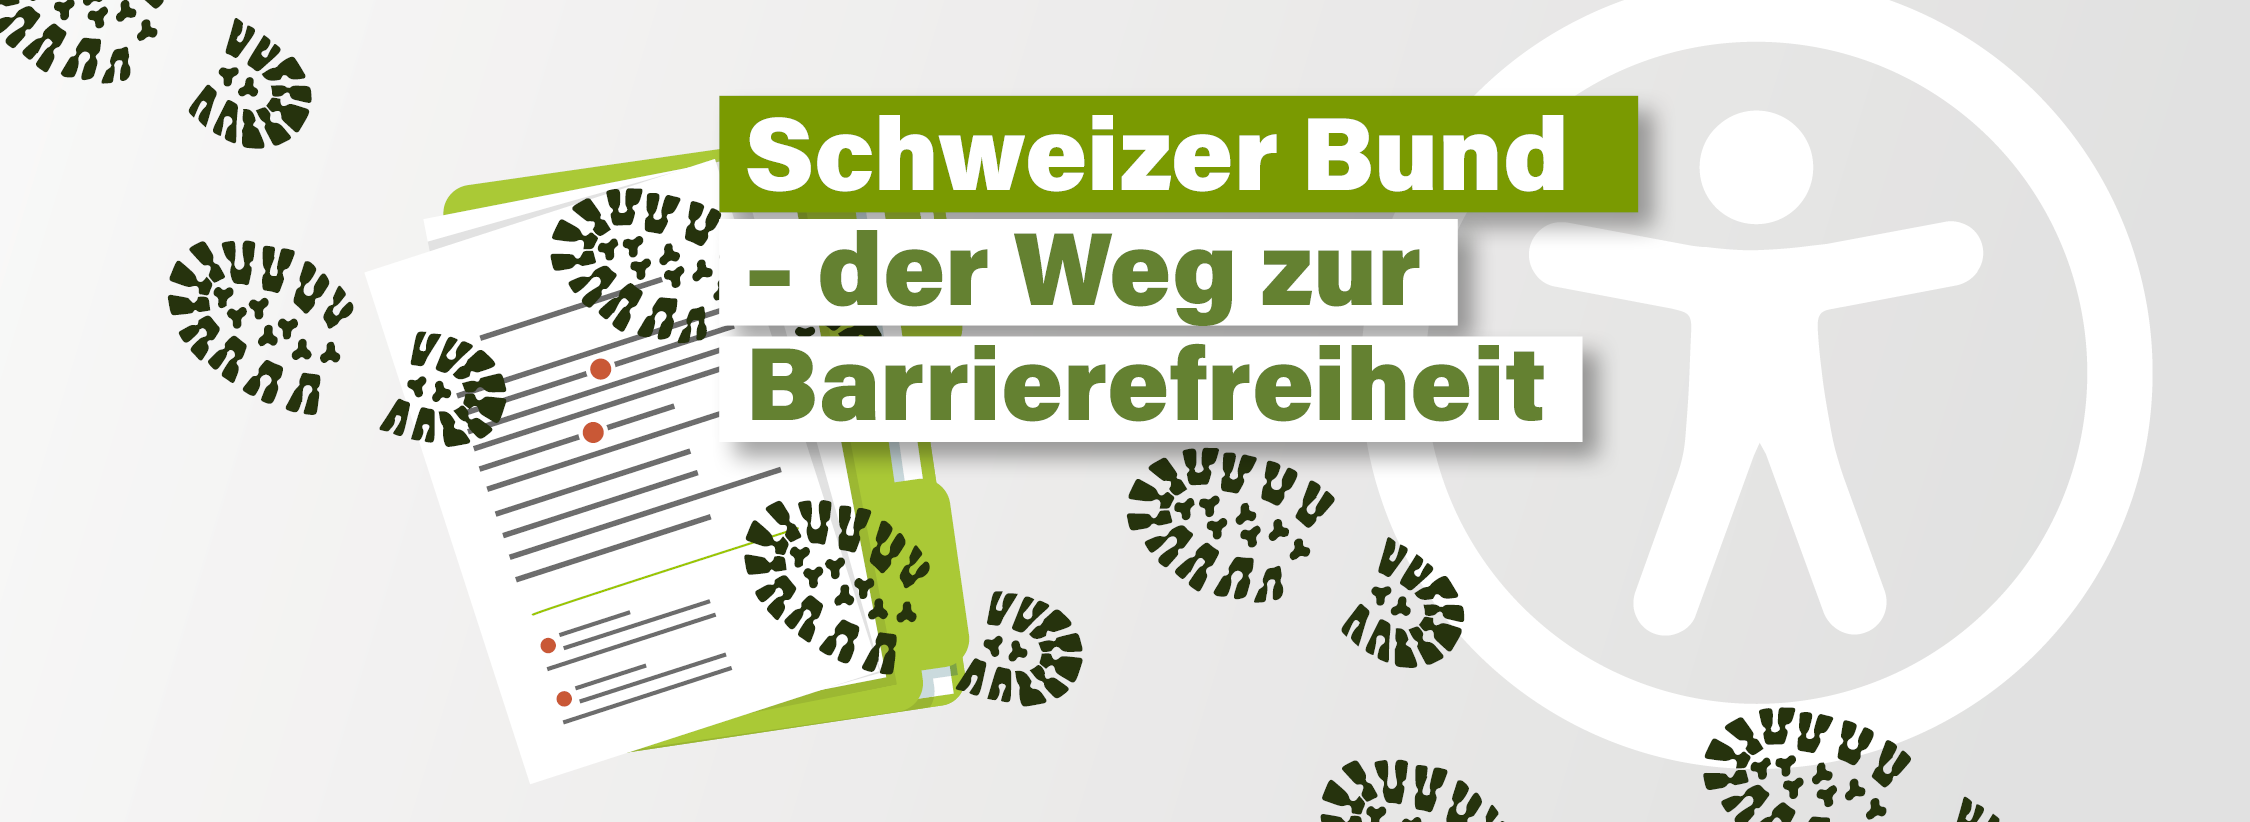 Titel: Schweizer Bund: der Weg zur Barrierefreiheit. Fußspuren, die über ein Dokument gehen. Im Hintergrund: Ein weißes Symbol der digitalen Barrierefreiheit auf grauem Untergrund. 